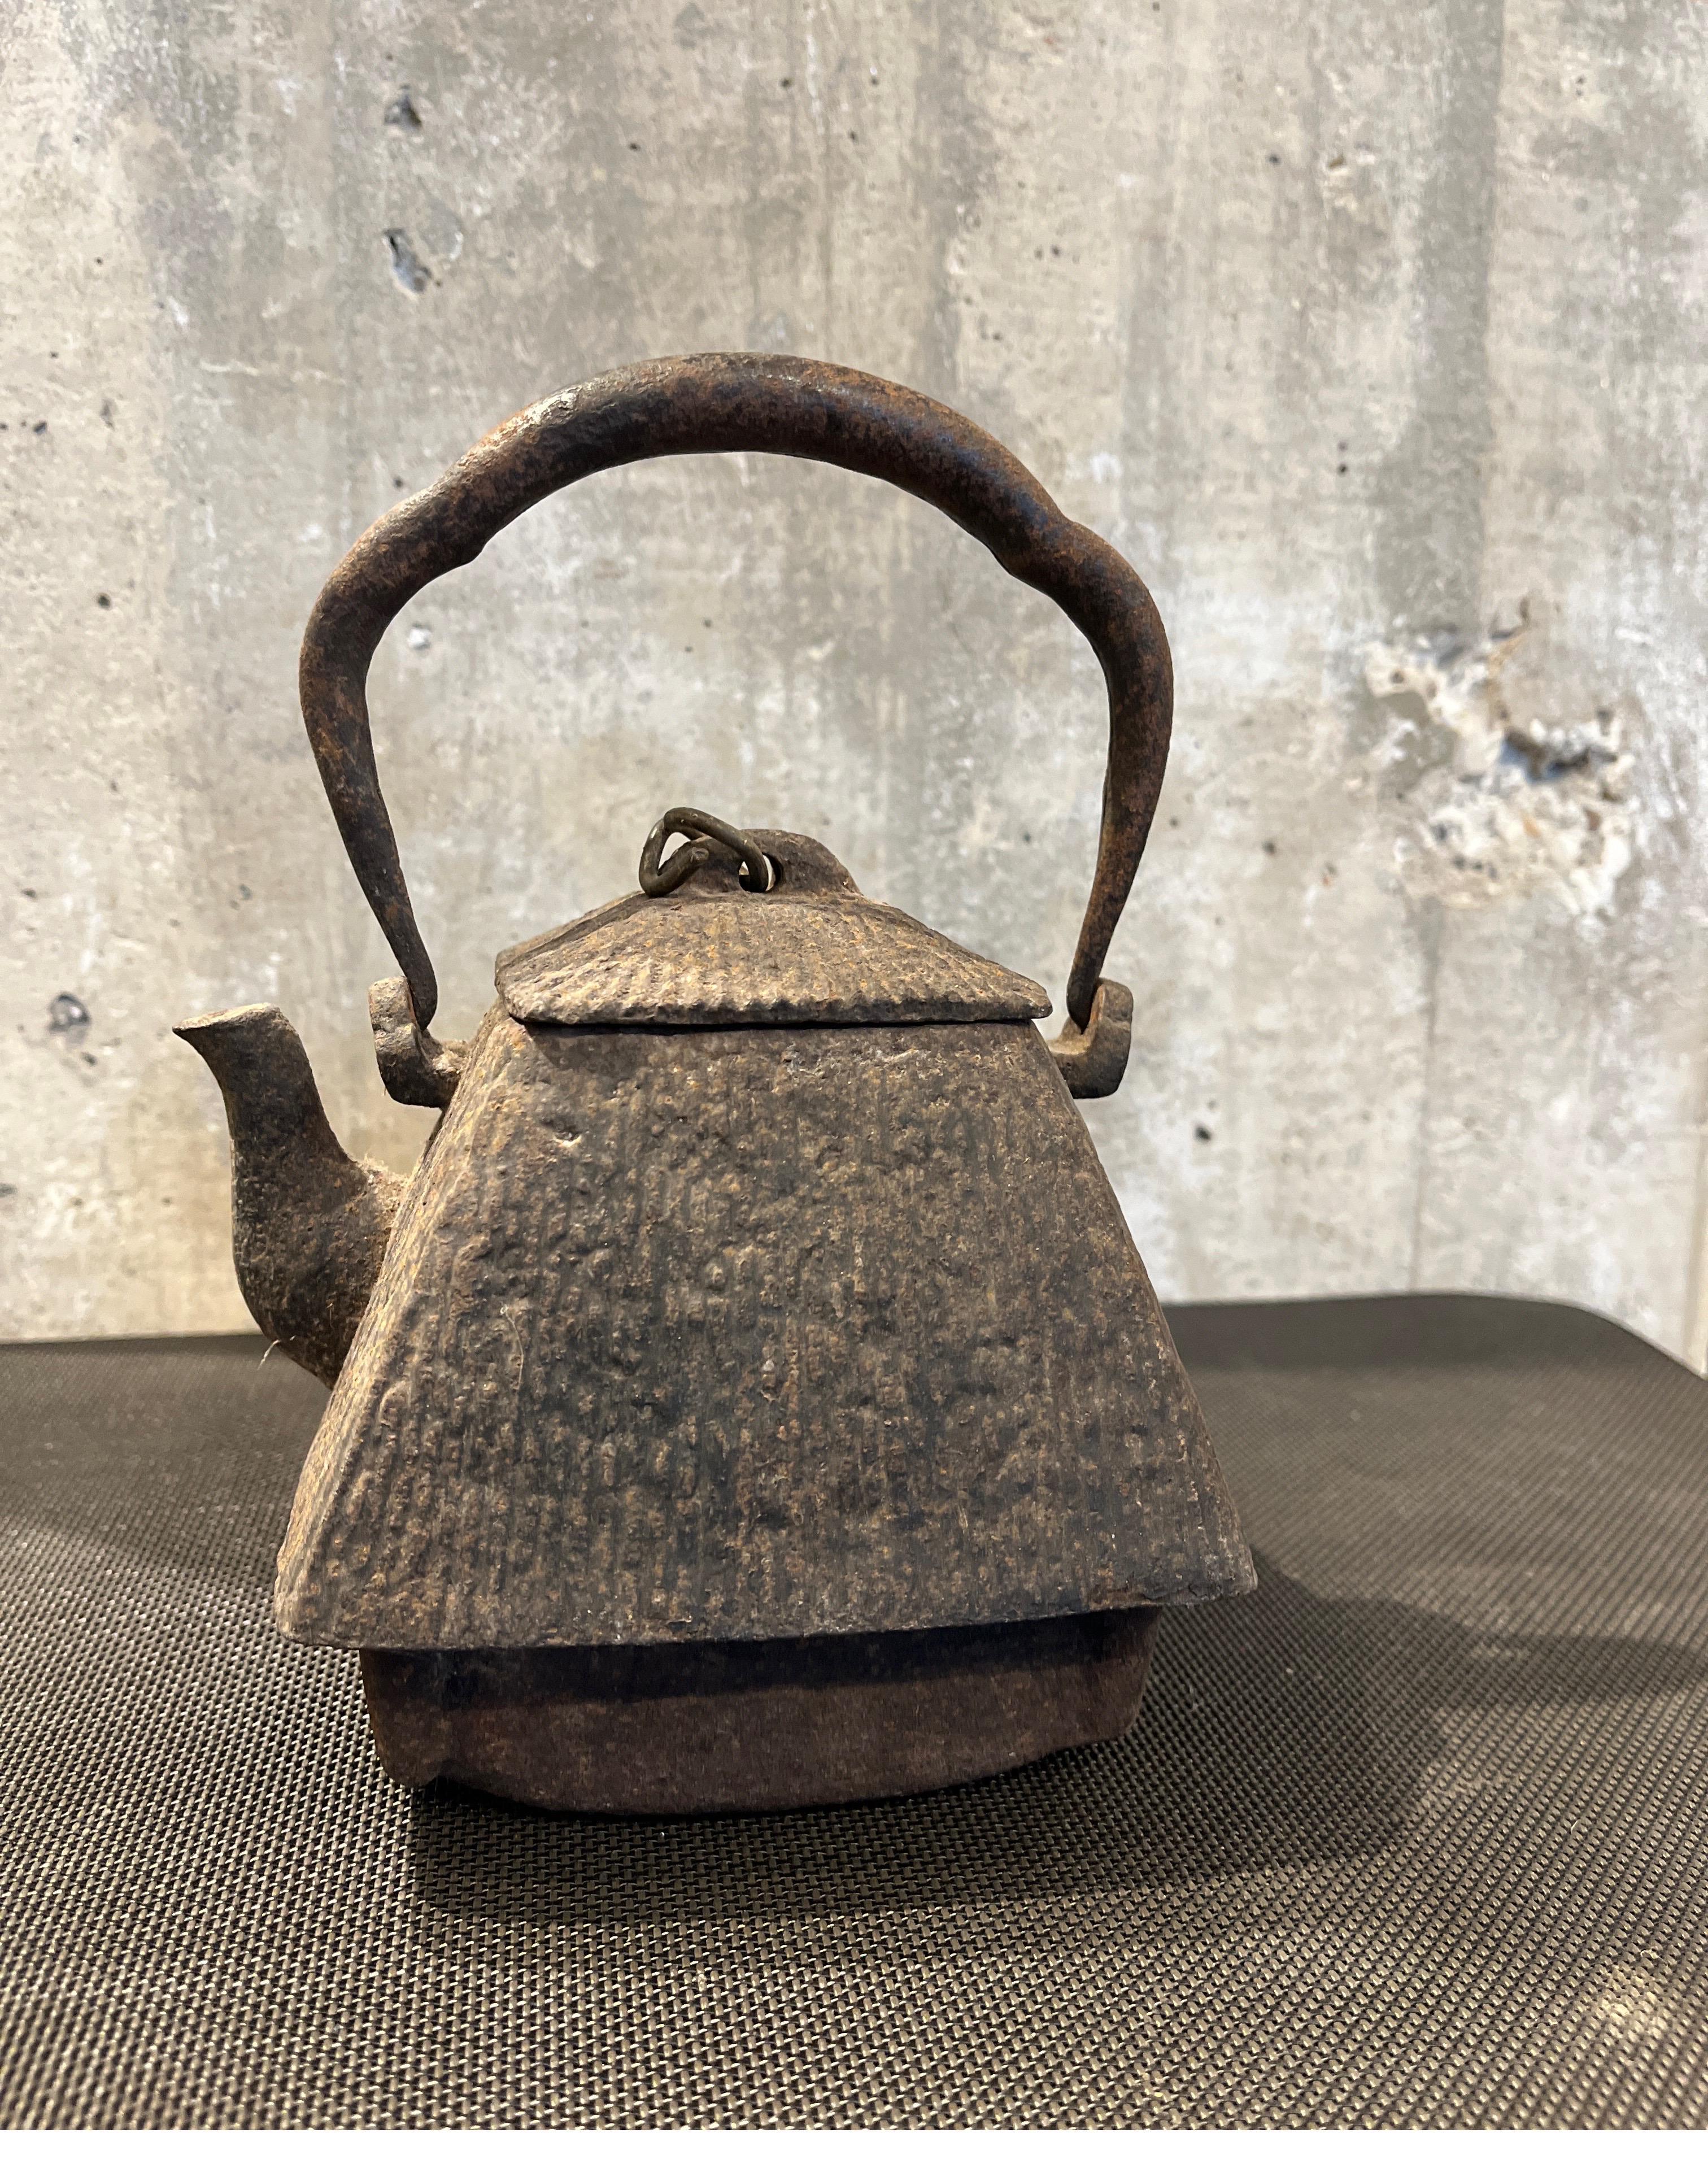 cast iron kettle antique